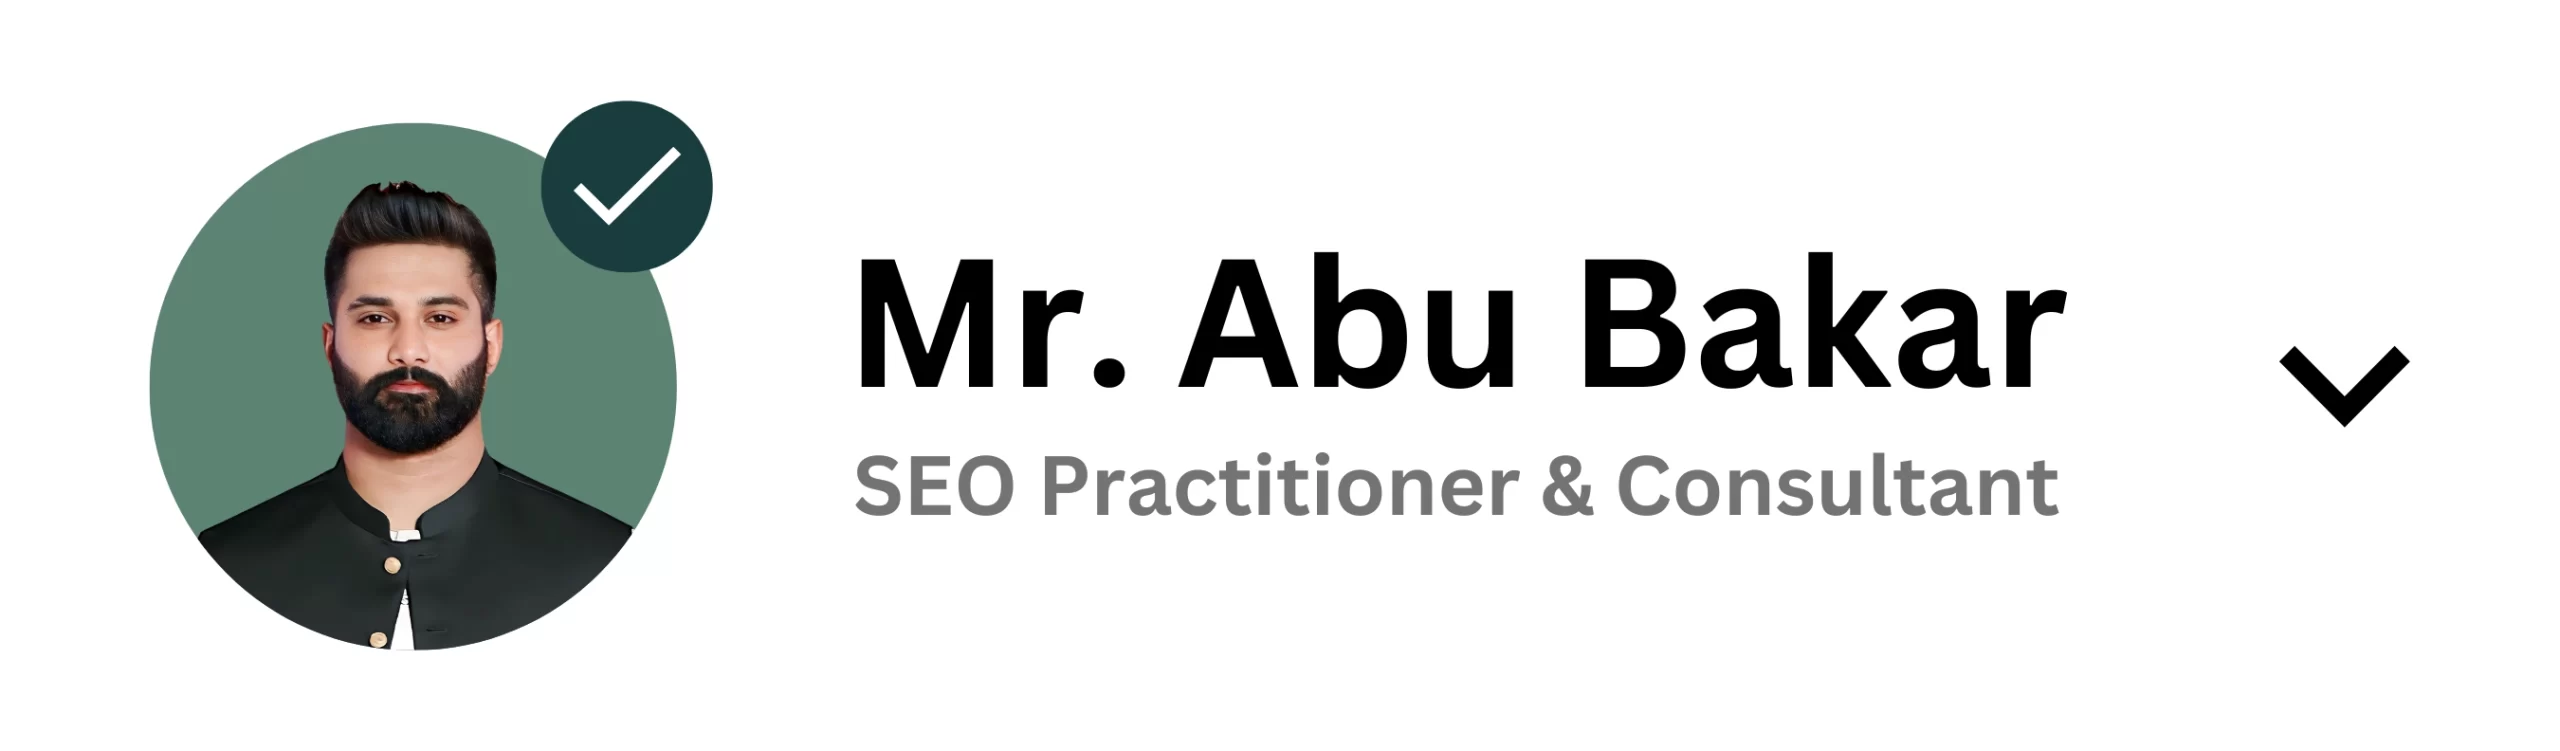 Abu Bakar SEO Practitioner & Consultant